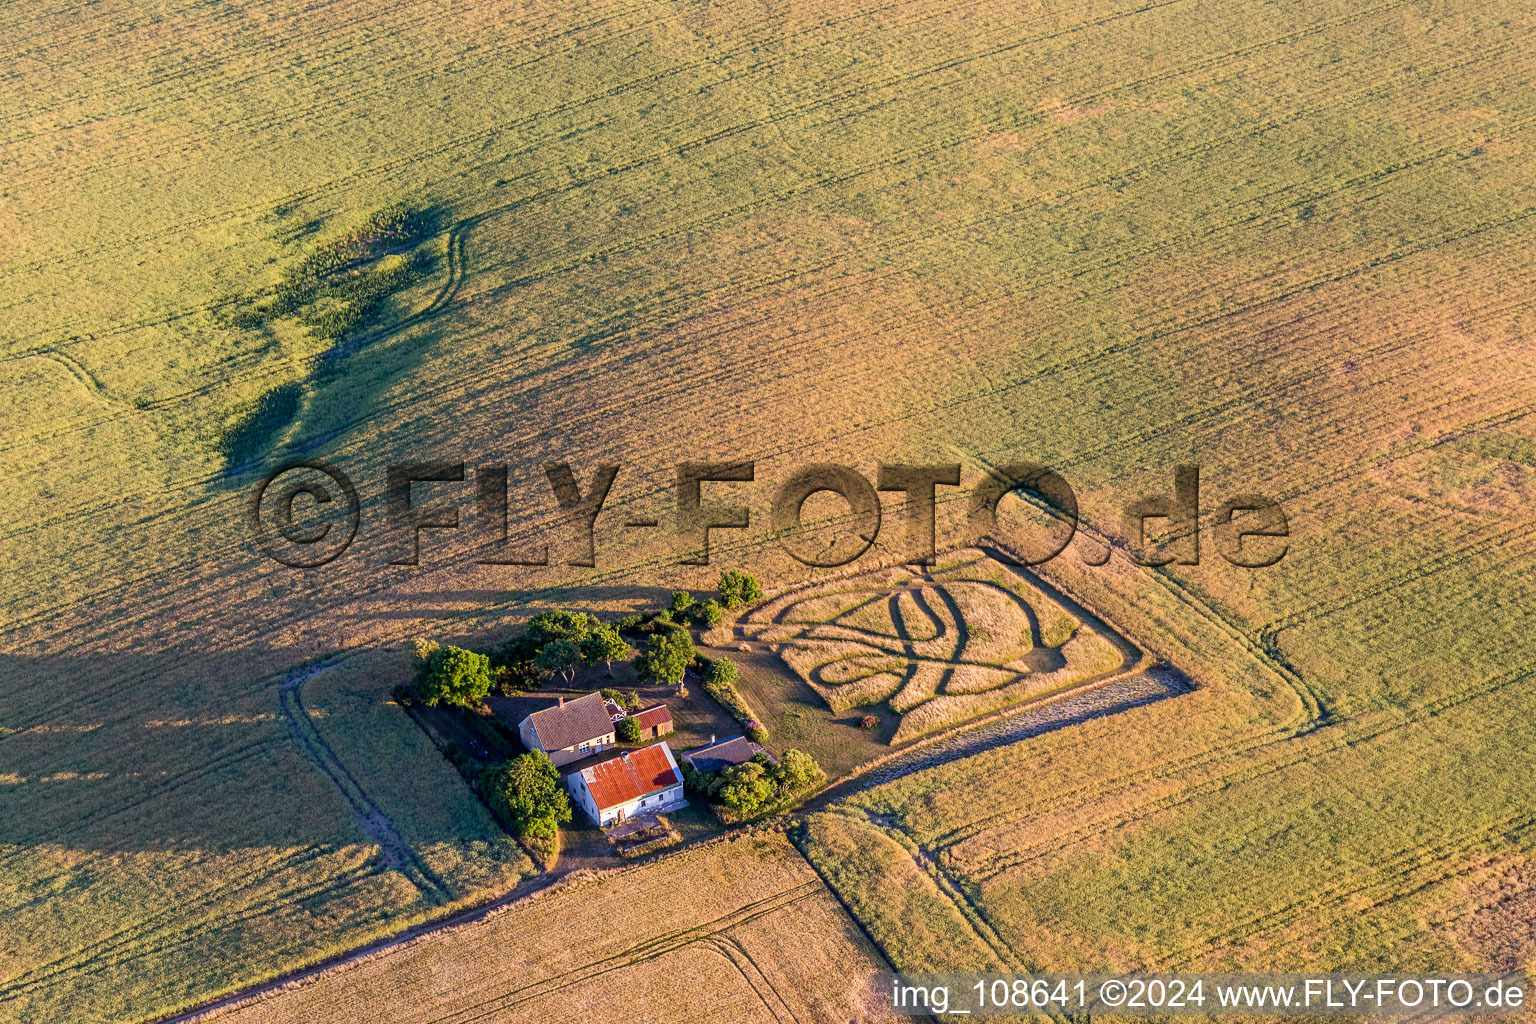 Homestead of a farm surrounded by crop fields in Borre in Region Sjaelland, Denmark